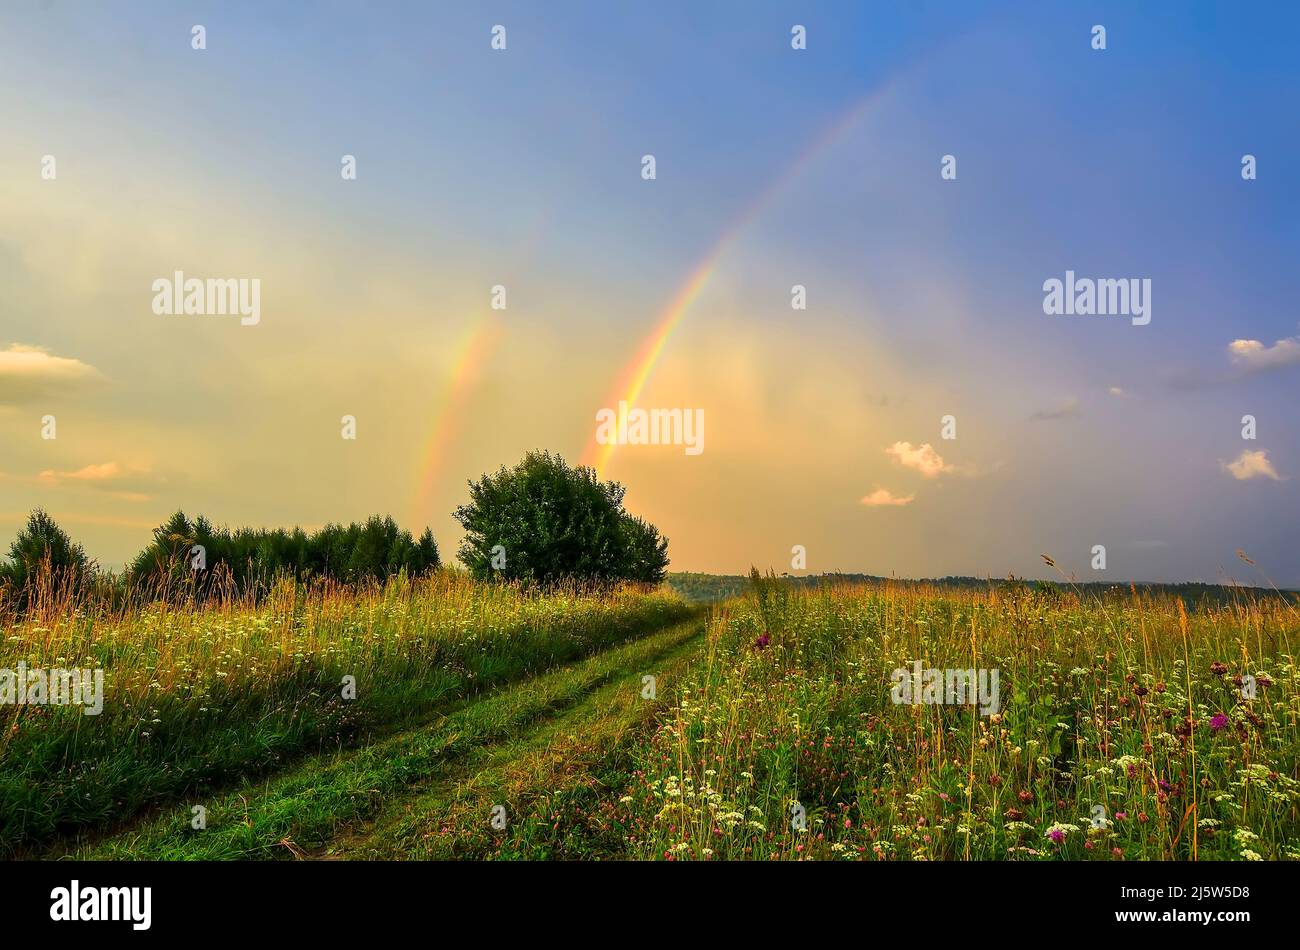 Increíble escena en prado de verano. Parte arco de hermoso arco iris doble sobre carretera rural y pradera con flores en la fantástica luz del sol de la tarde. Paisaje pho Foto de stock